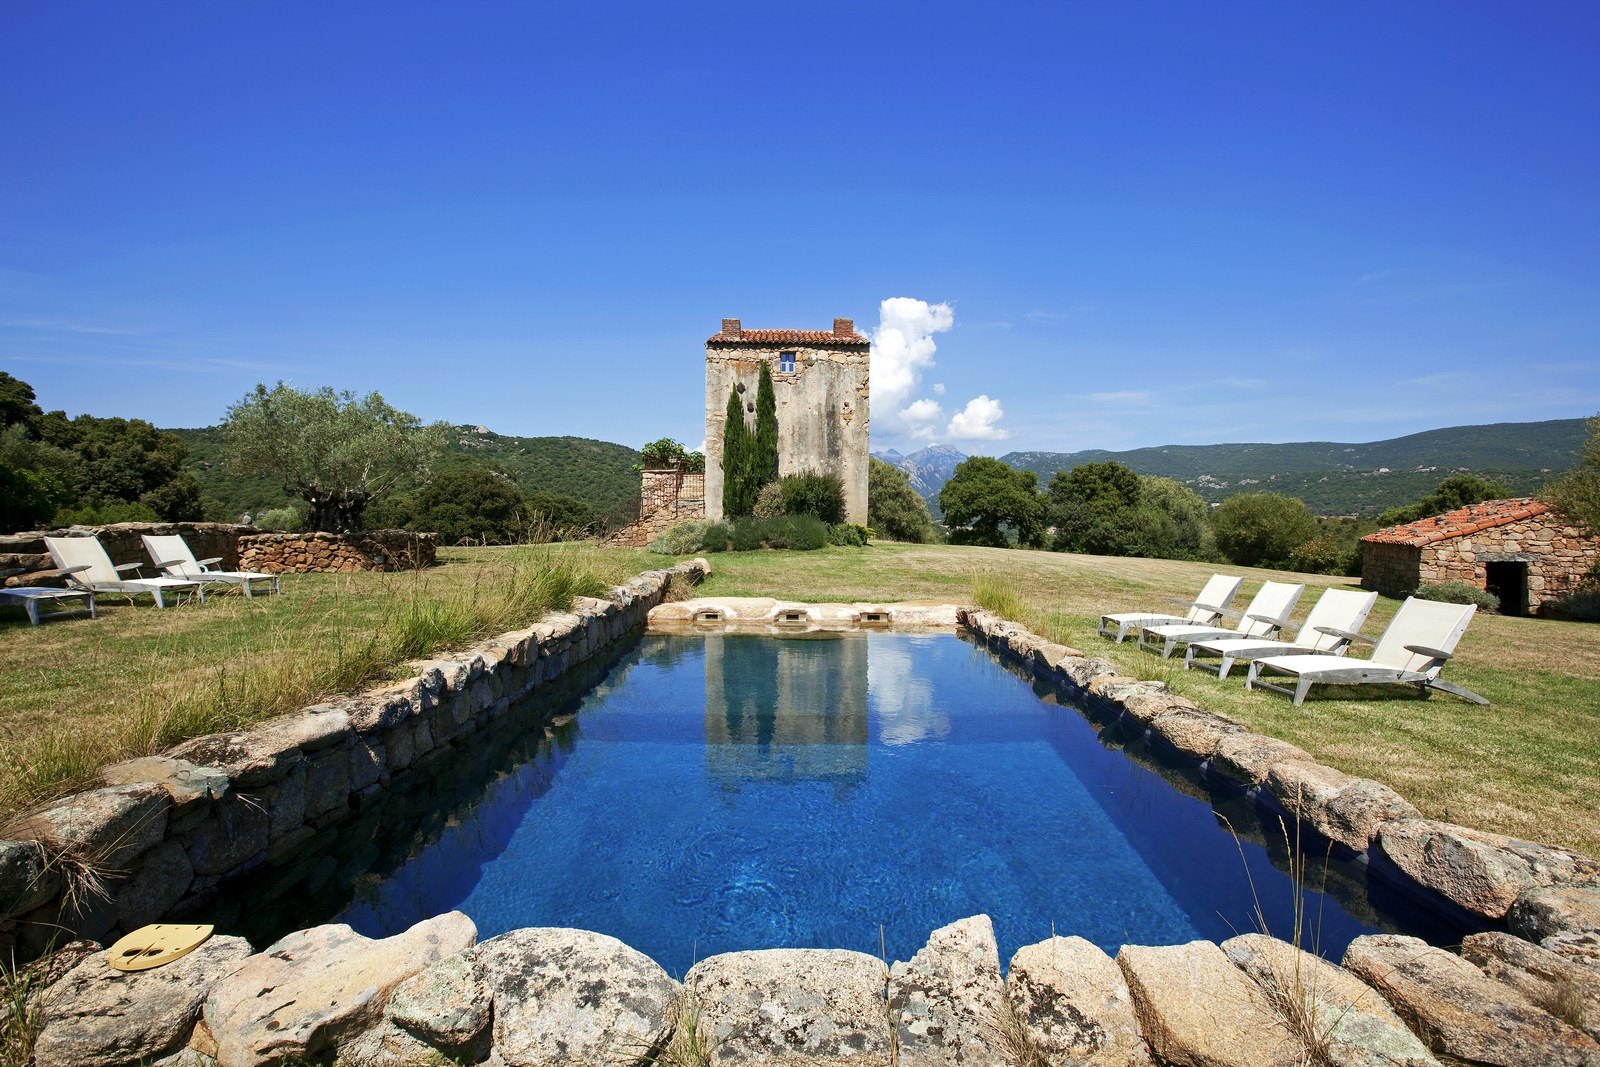 Pool and facade of A Figa, Corsica